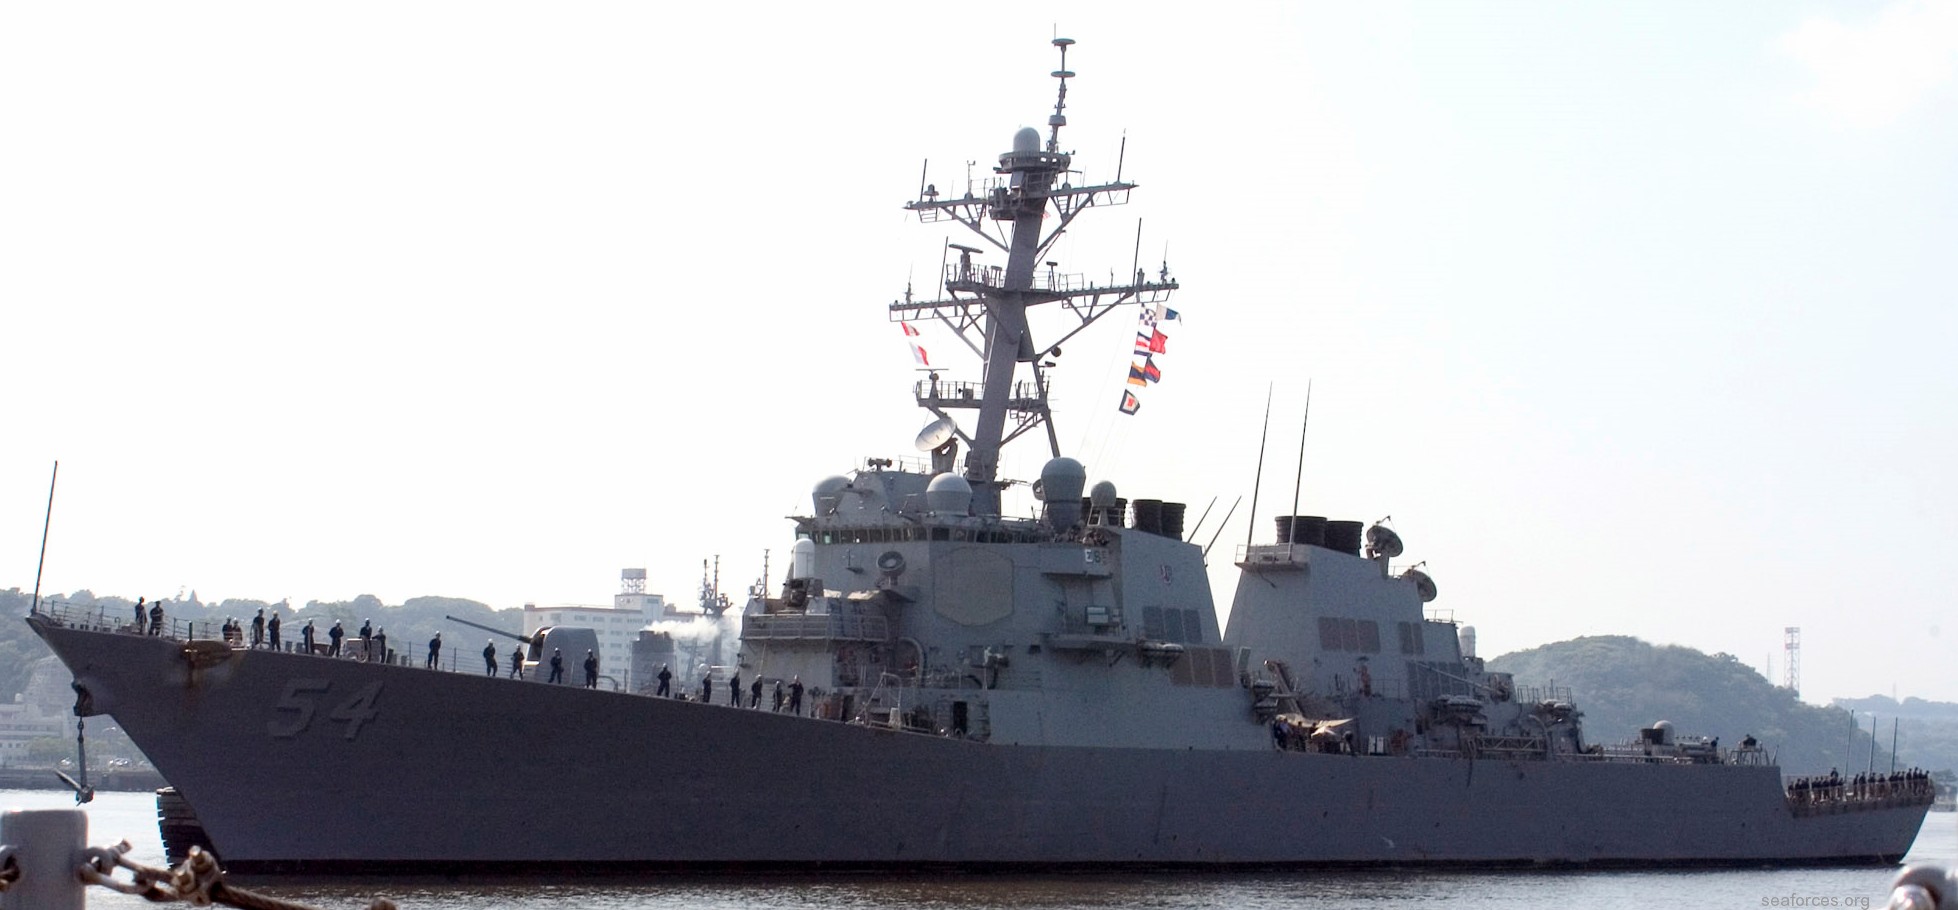 ddg-54 uss curtis wilbur destroyer us navy 63